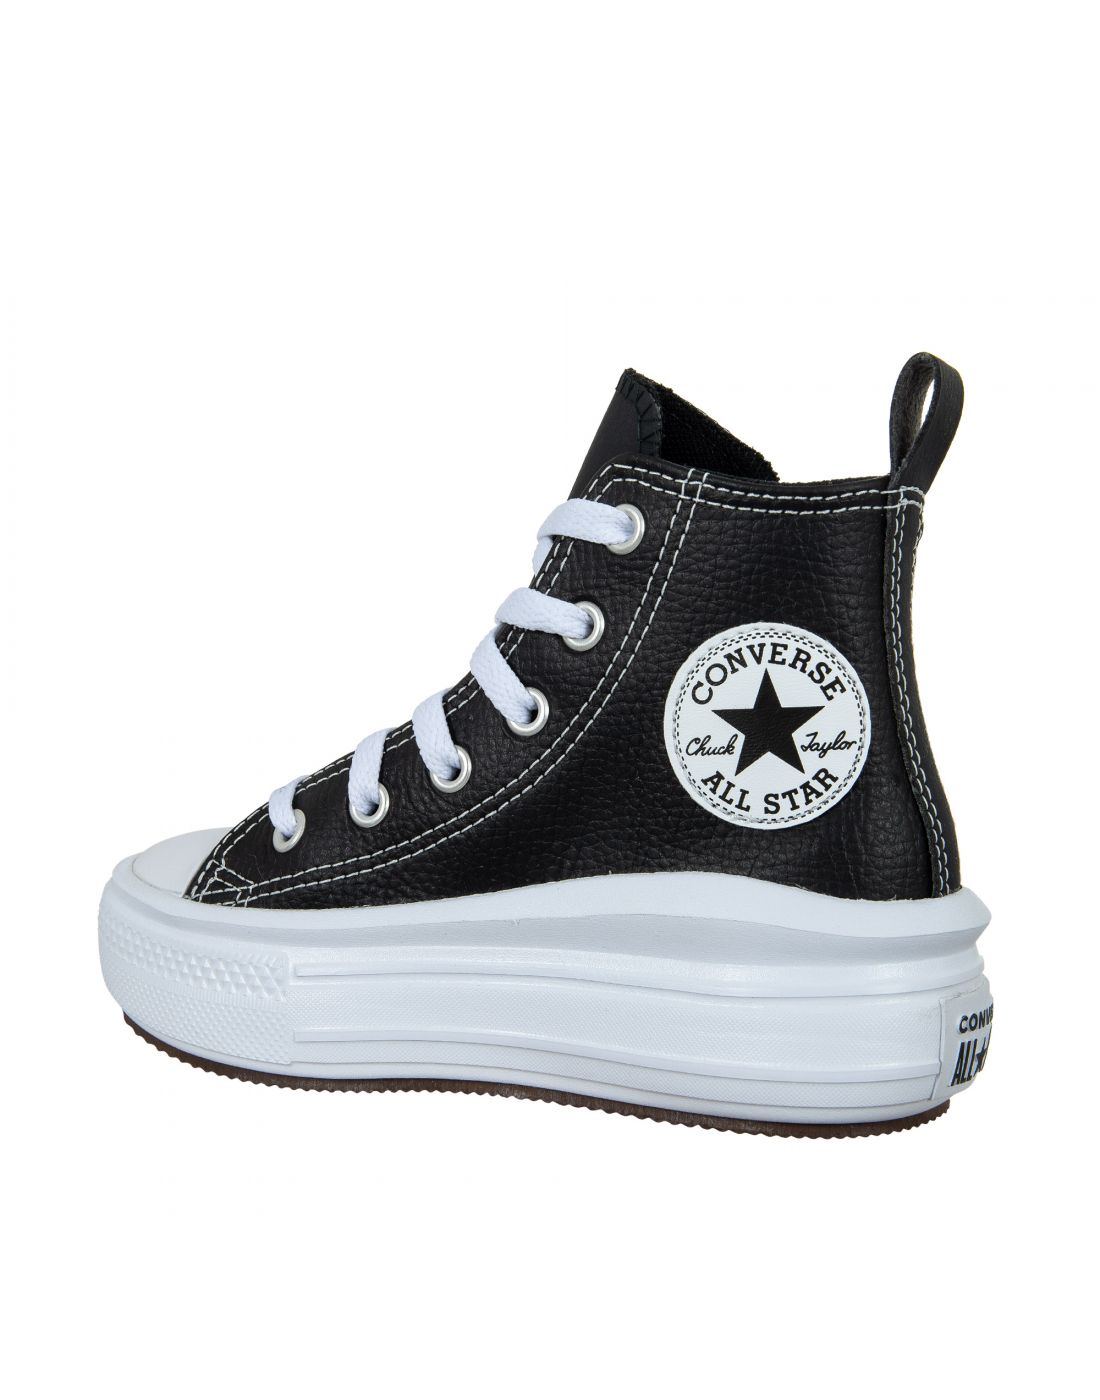 Παιδικά Παπούτσια Sneakers All Star, Converse, 23270395 | LapinKids.com |  LAPIN KIDS